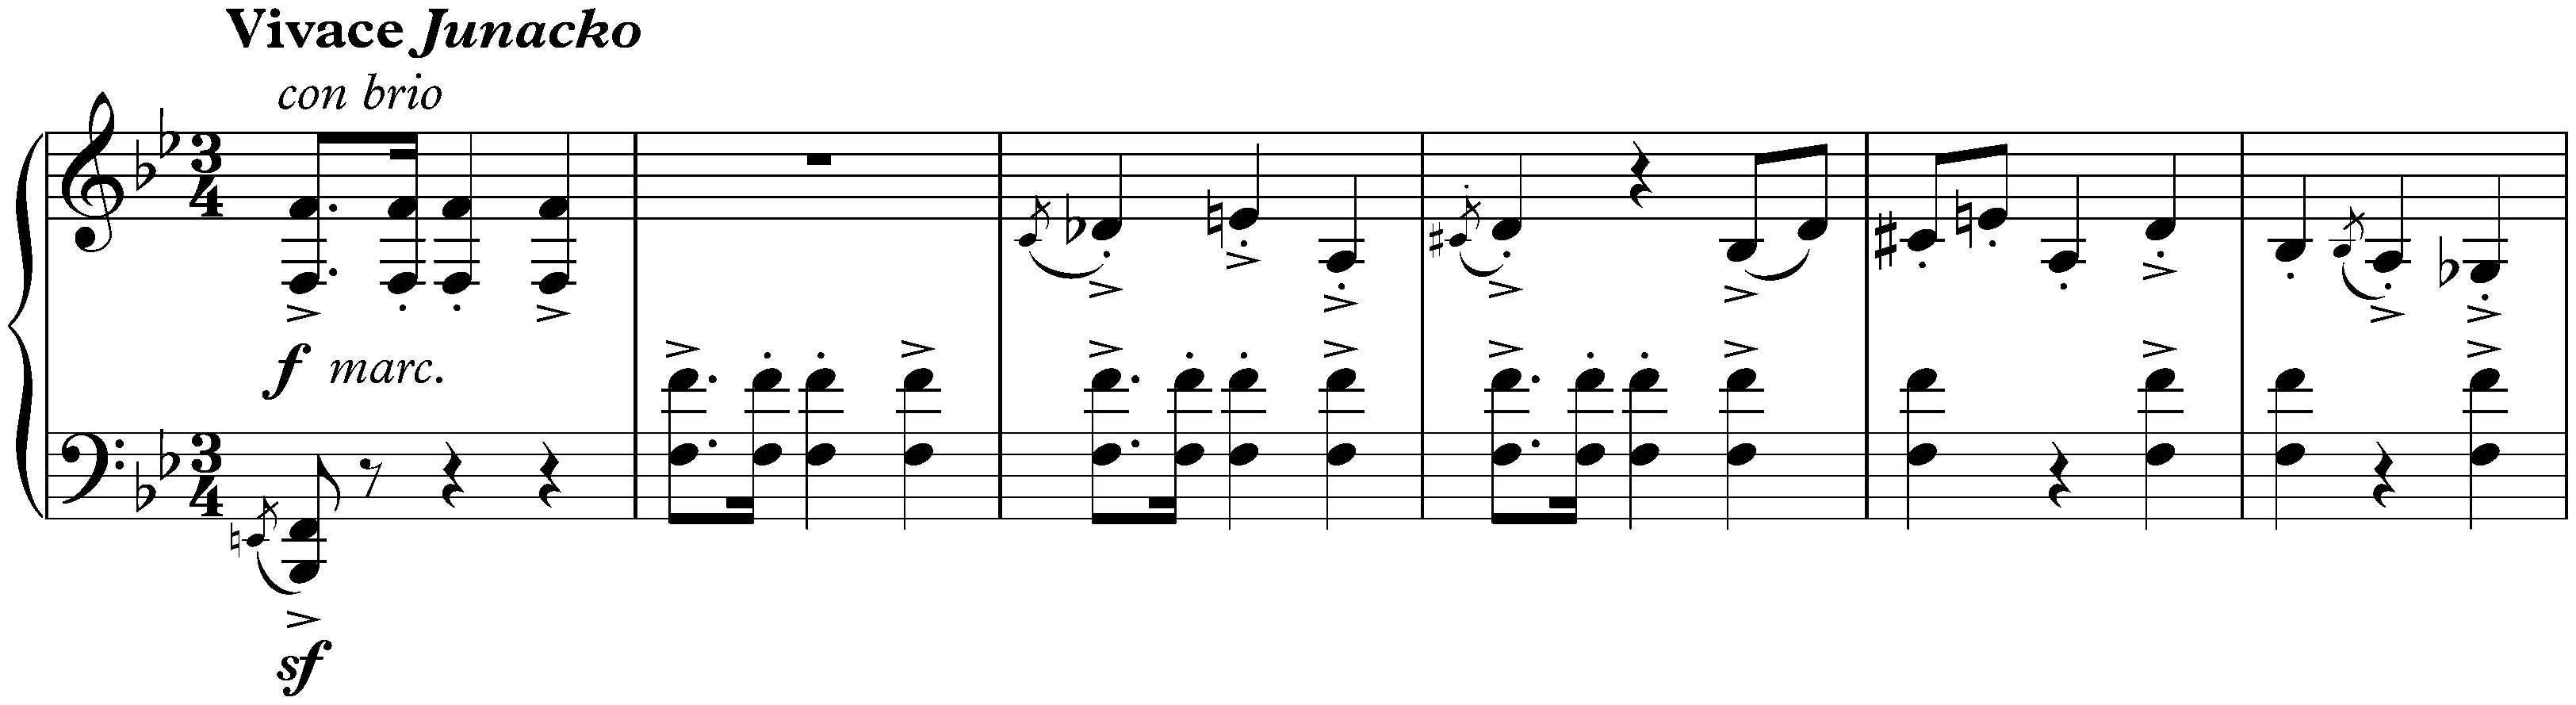 Twenty Mazurkas, op. 50; 6. Vivace